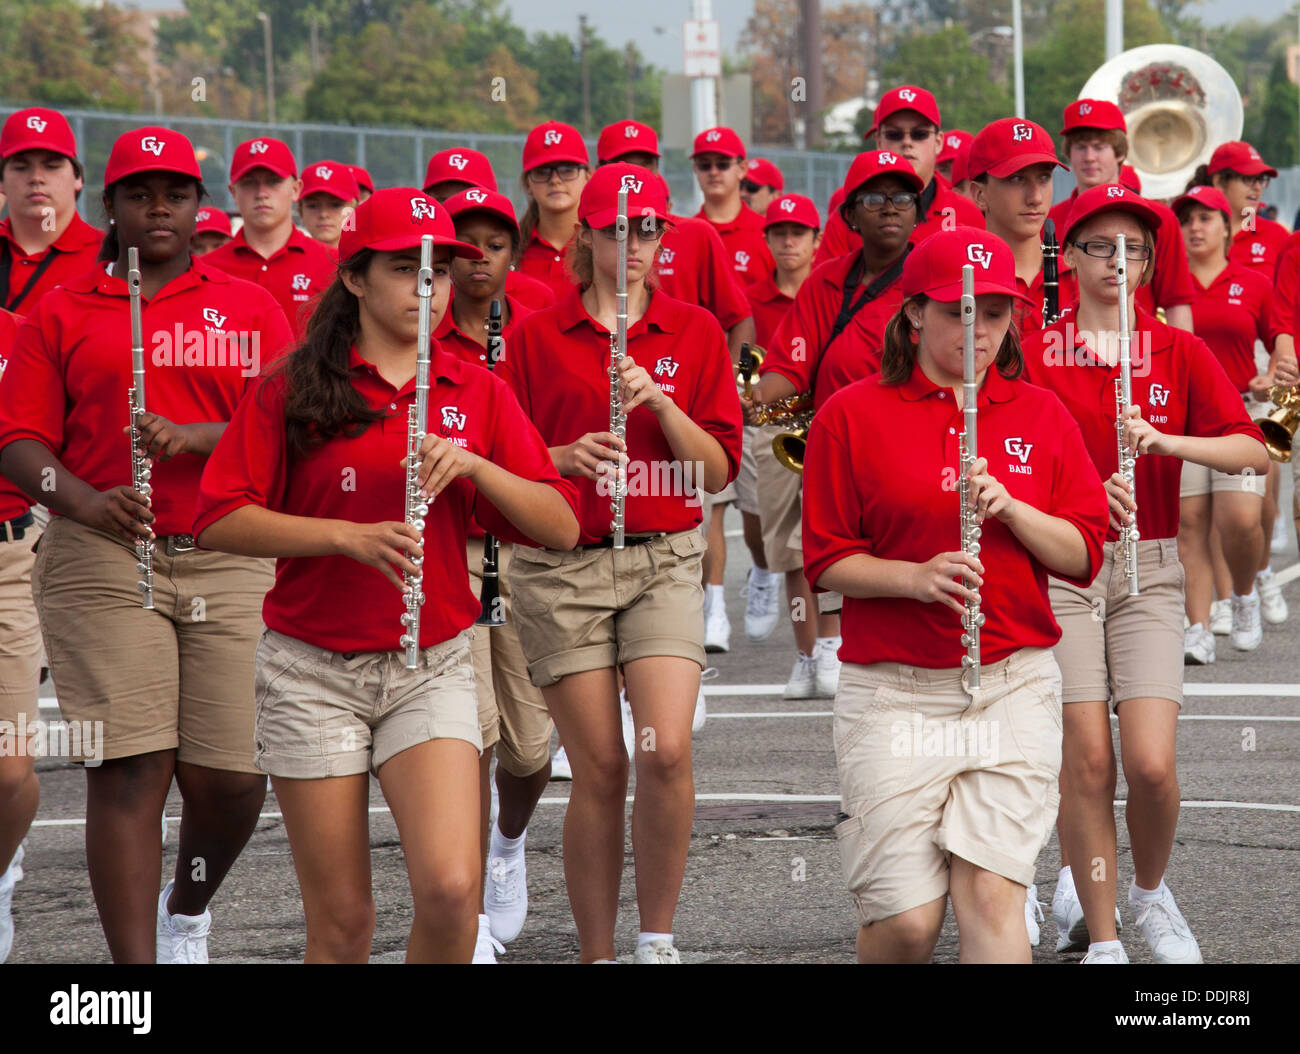 Detroit, Michigan - la Chippewa Valley High School marching band à Detroit's parade de la fête du Travail. Banque D'Images